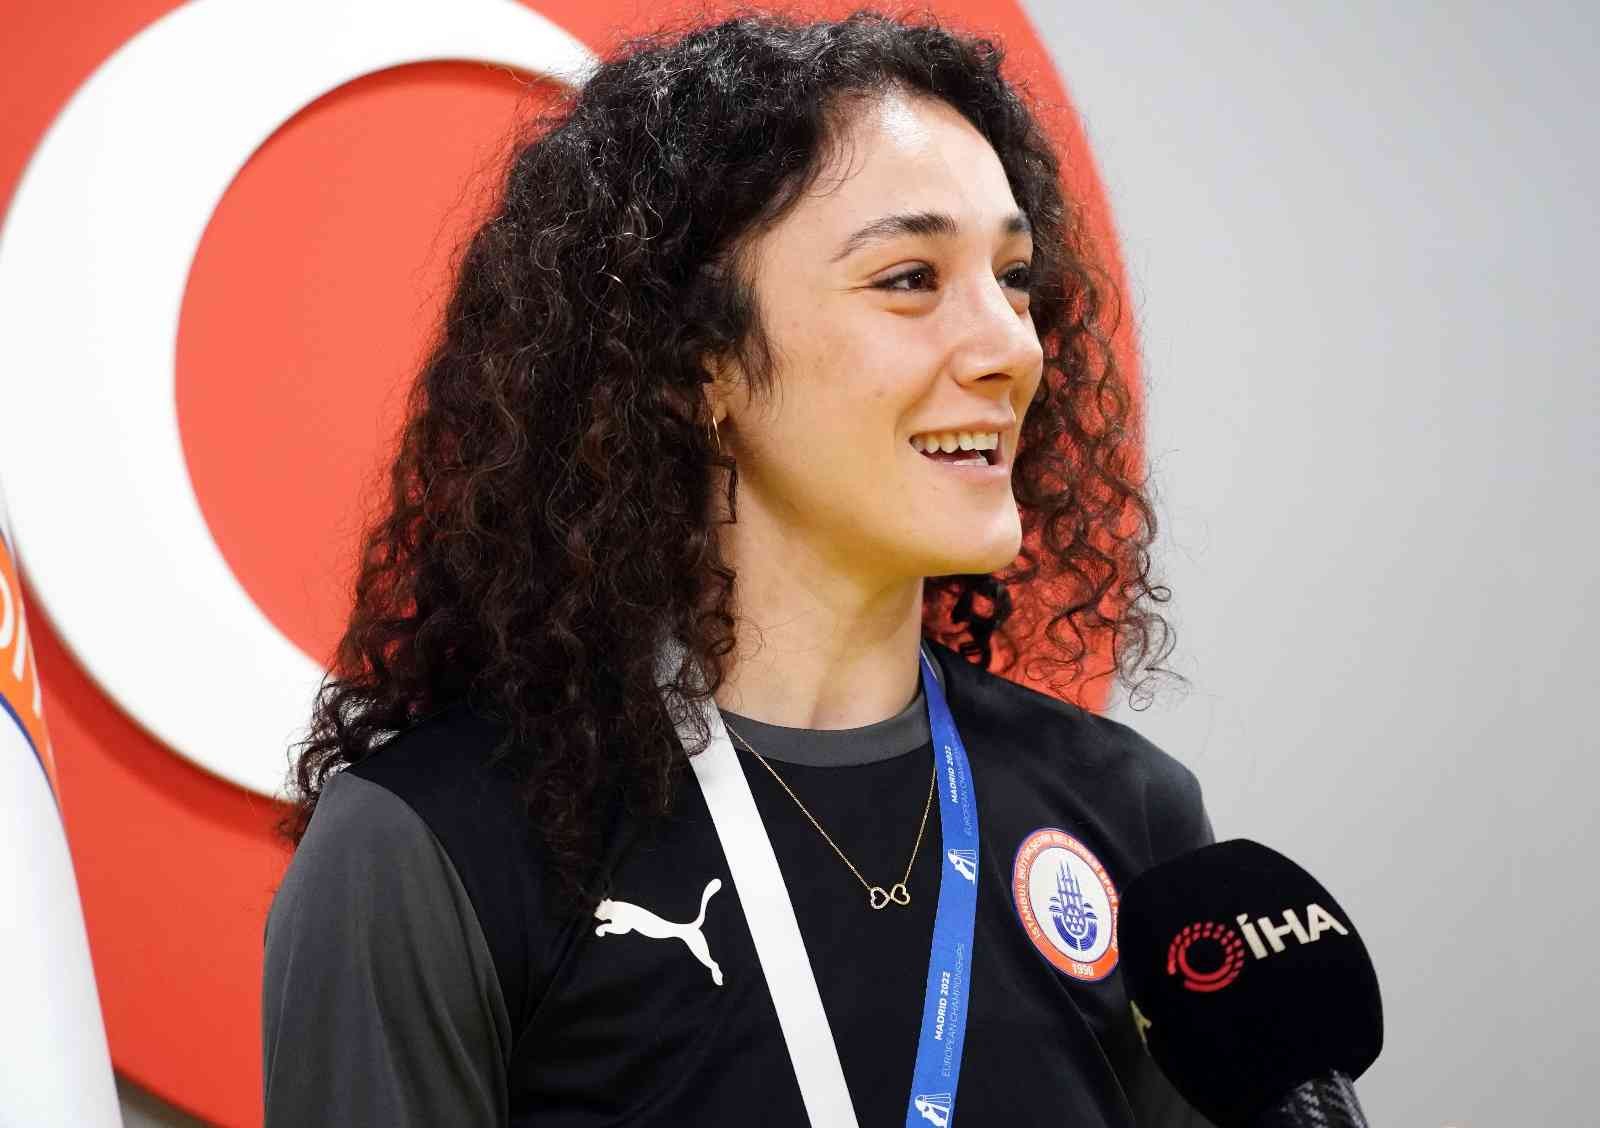 İspanya’da düzenlenen Avrupa Badminton Şampiyonası’ndan bronz madalya ile dönen Neslihan Yiğit, “Dünya sıralamasında ilk 10 içerisinde, en iyiler ...